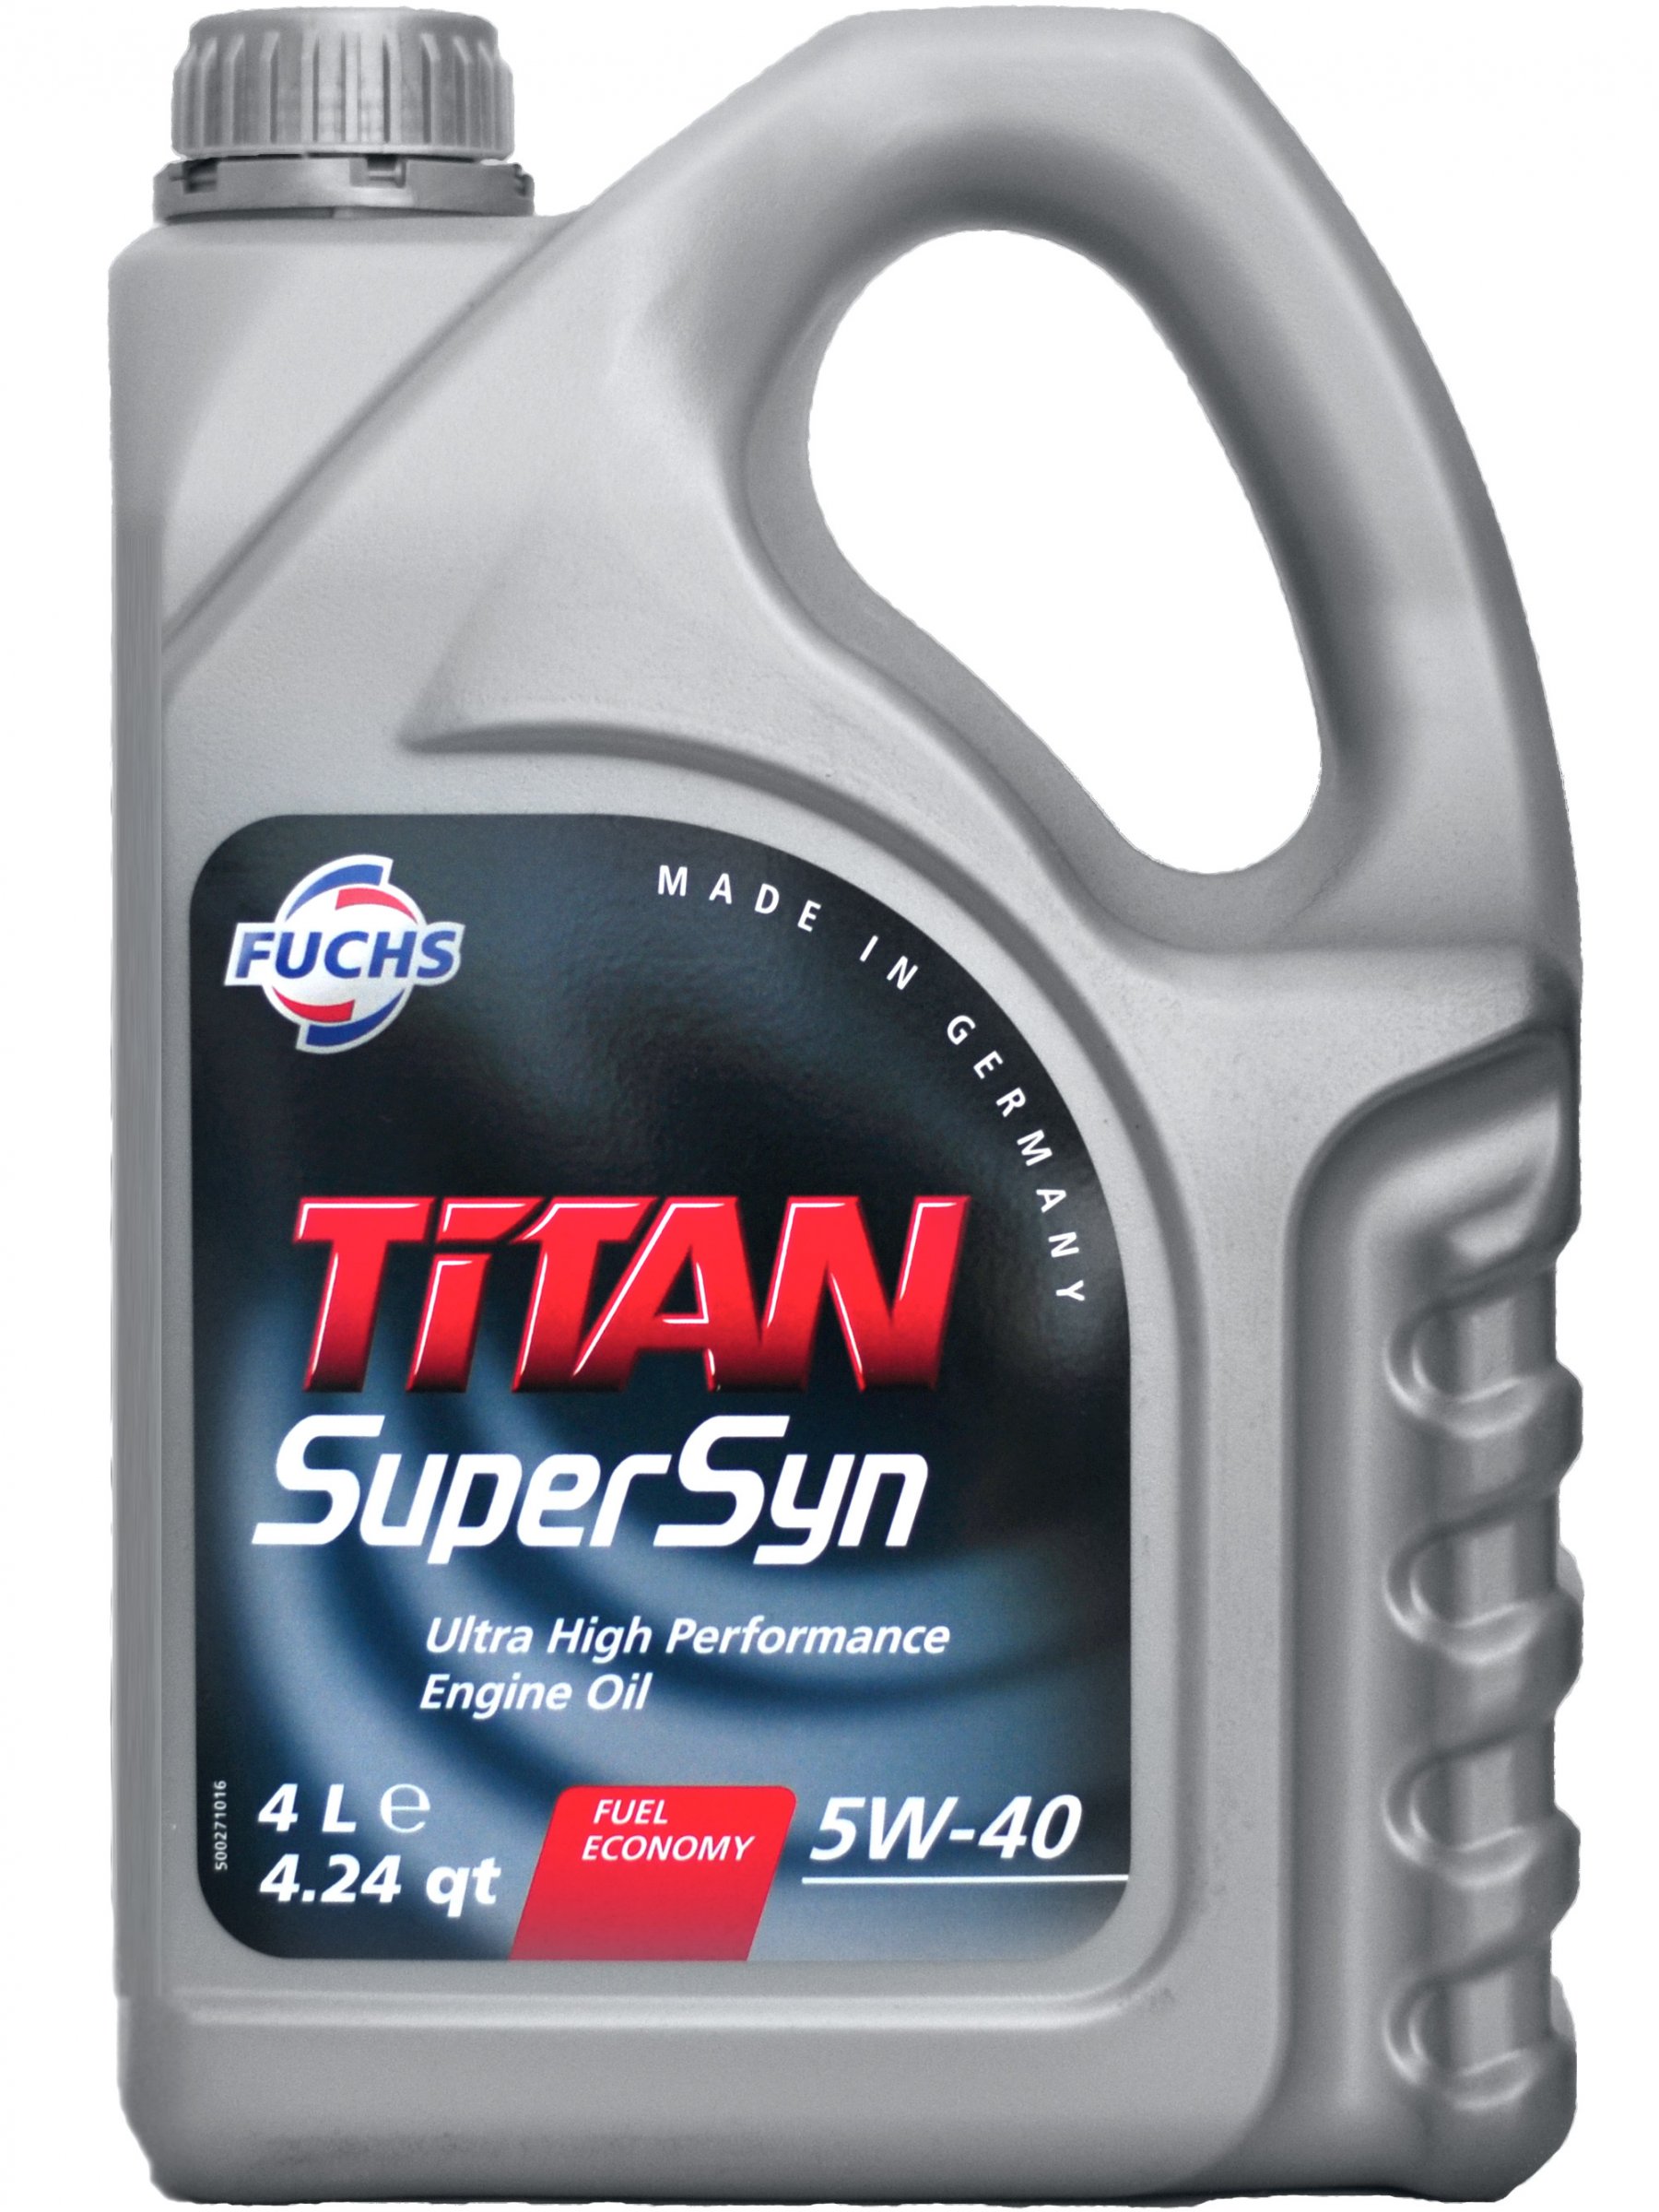 Fuchs Titan SUPERSYN 5w-40 